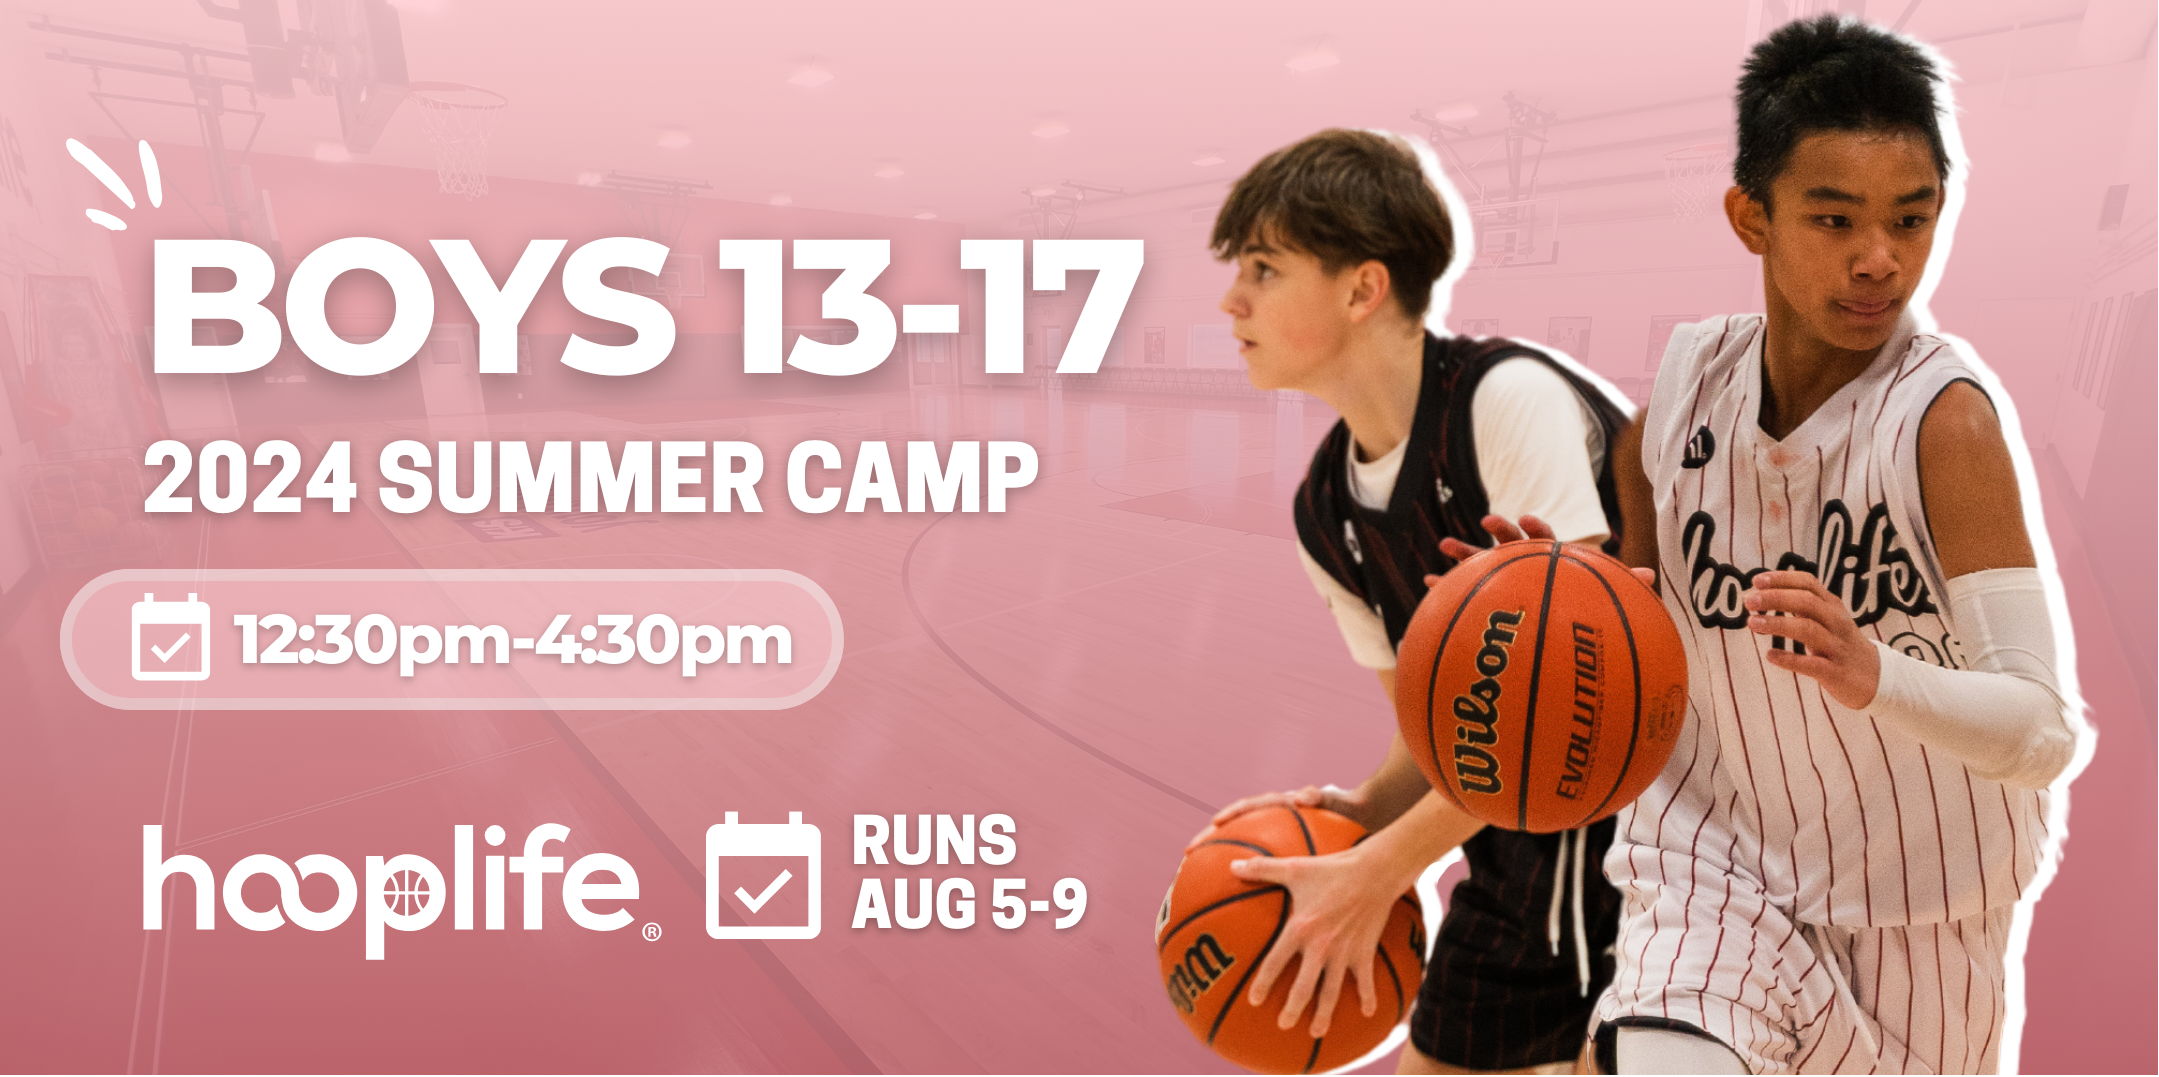 Boys 13-17 Summer Camp | Aug 5-9